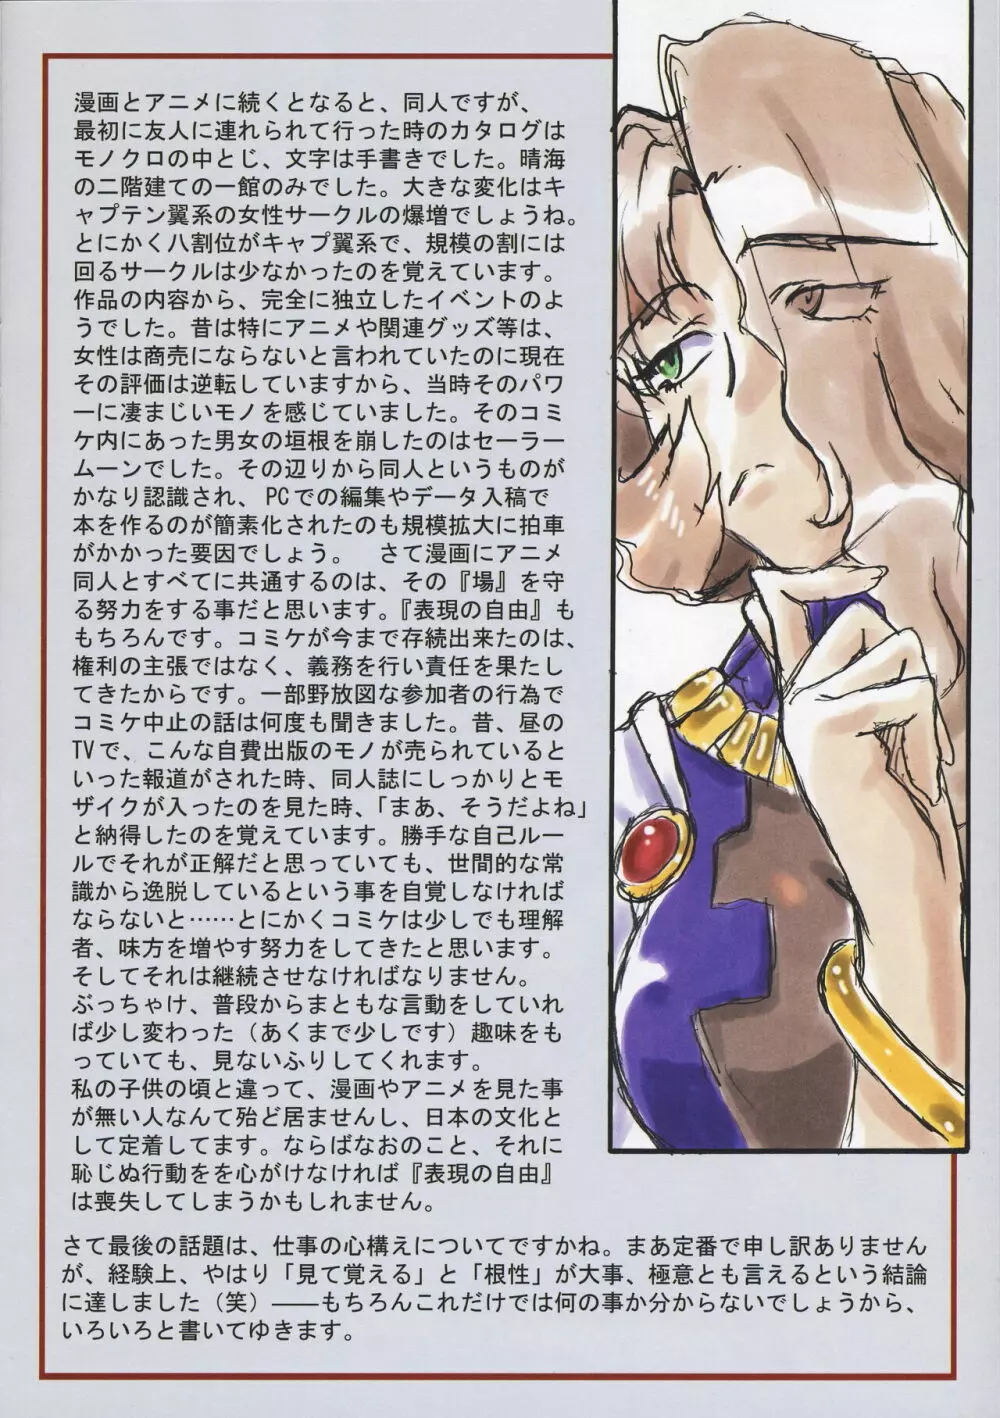 Omatsuri Zenjitsu no Yoru Tenchi Ban 21.12 8ページ